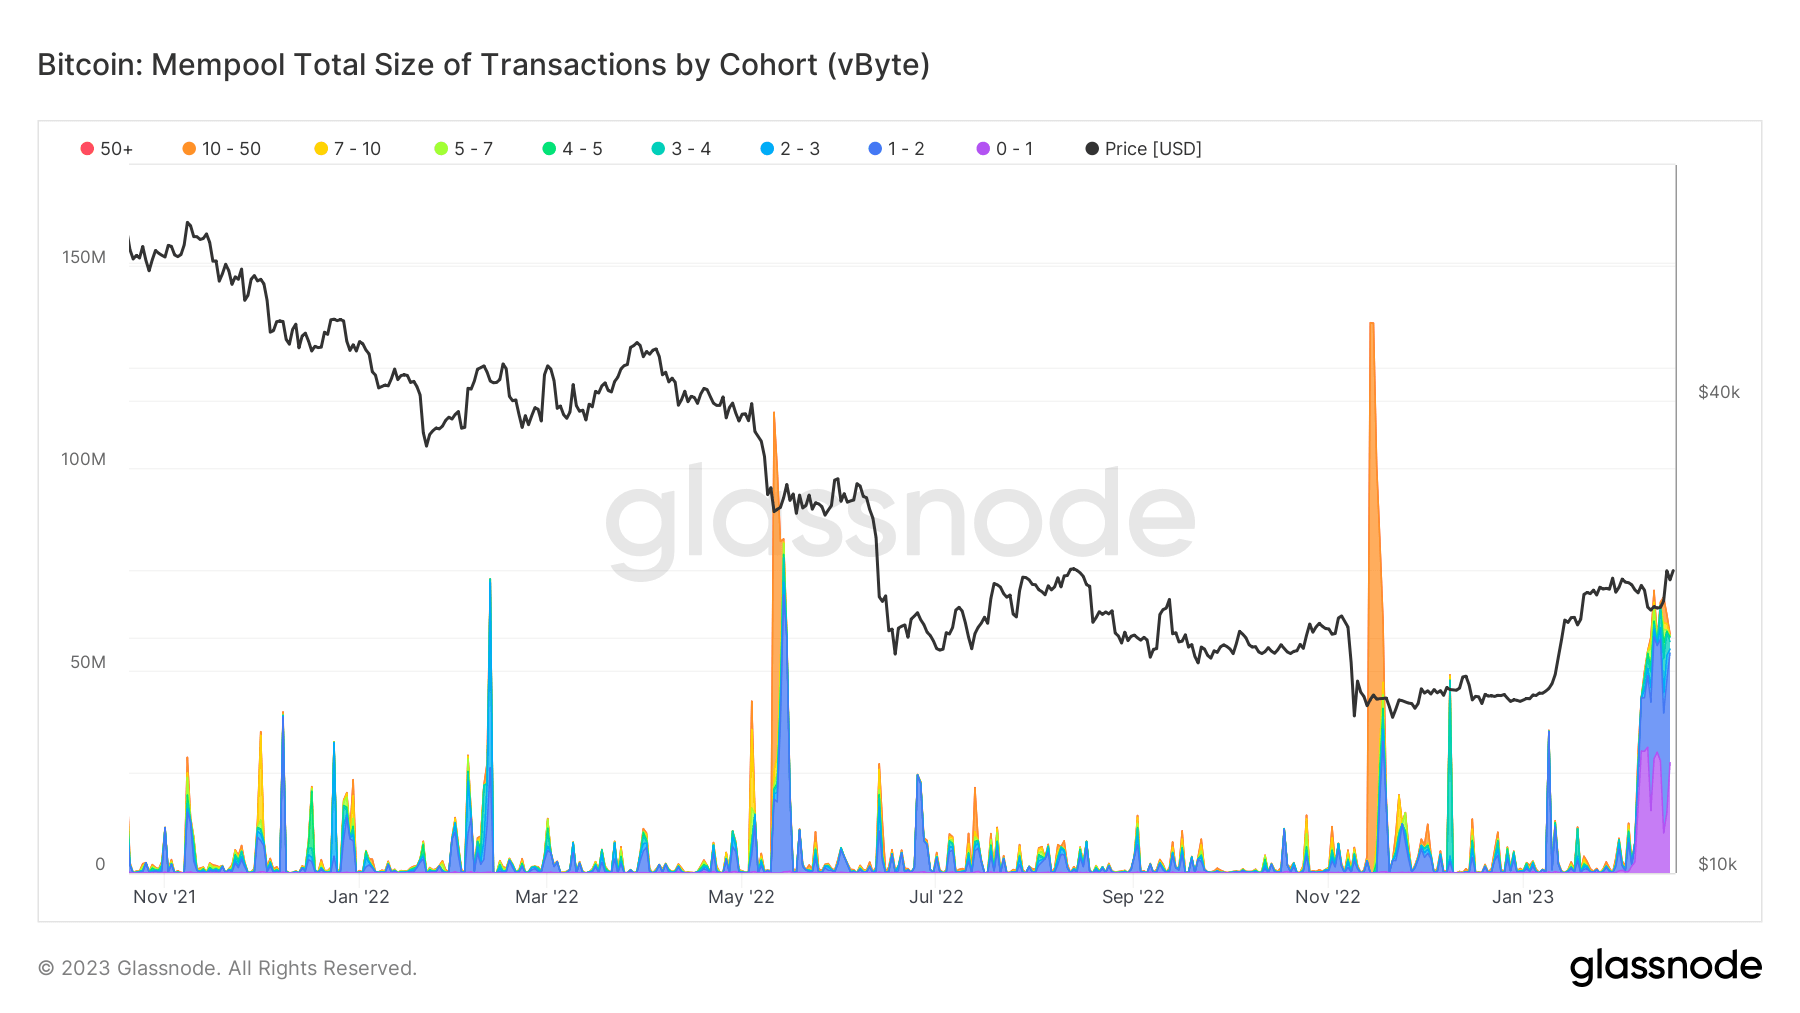 Tamaño total de las transacciones del mempool de Bitcoin por cohorte